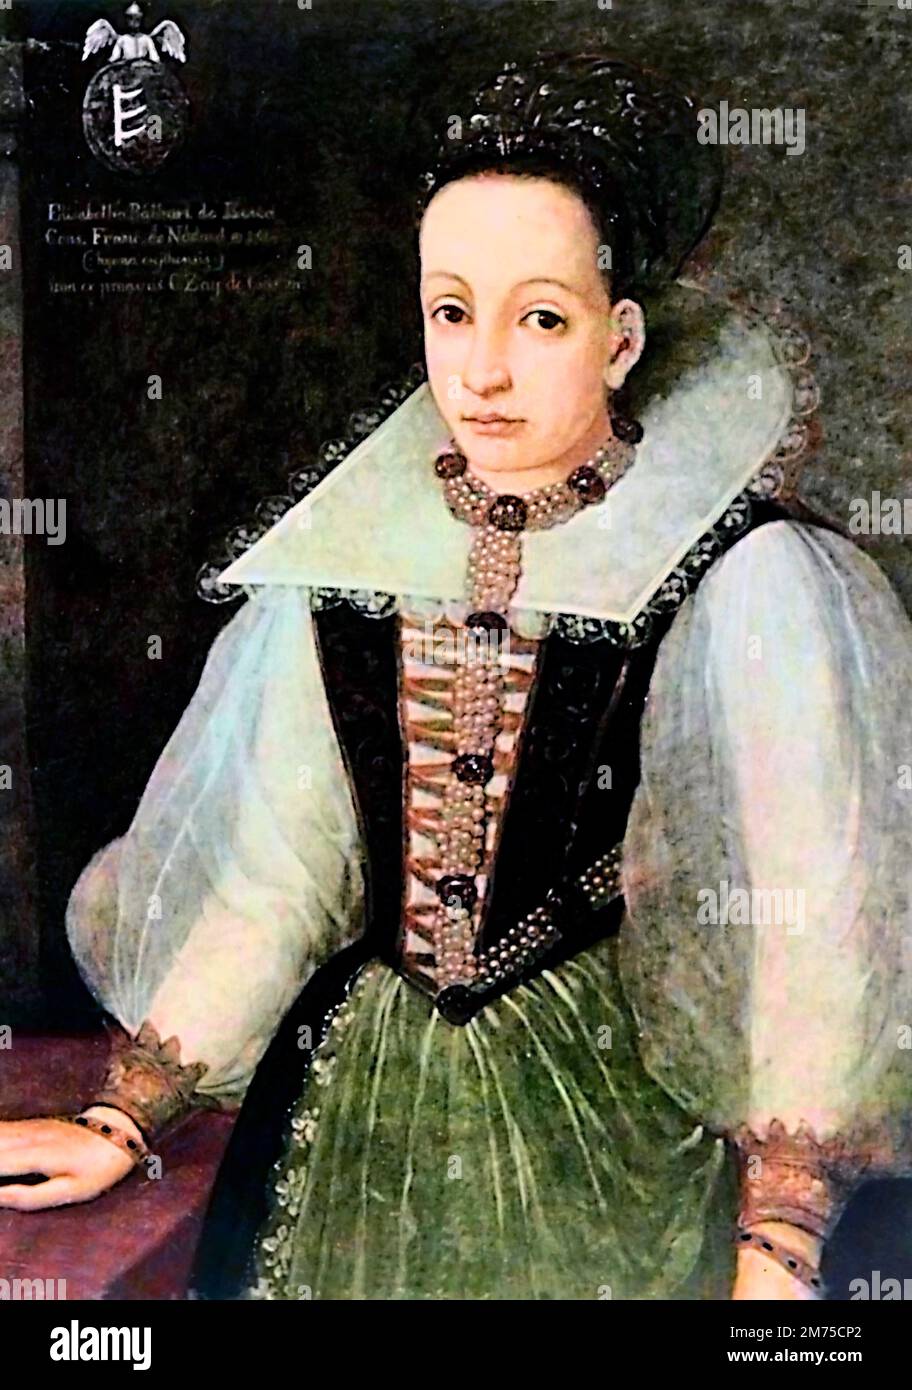 Elizabeth Báthory. Ritratto della contessa Elizabeth Báthory de Ecsed (1560-1614). Bathory era una nobildonna ungherese e presunto serial killer della famiglia di Báthory, che possedeva terreni nel Regno di Ungheria (ora Slovacchia). Lei e quattro dei suoi servitori sono stati accusati di torturare e uccidere centinaia di ragazze e donne tra il 1590 e il 1610. I suoi servi furono processati e condannati, mentre Báthory fu confinato fino alla sua morte. Foto Stock